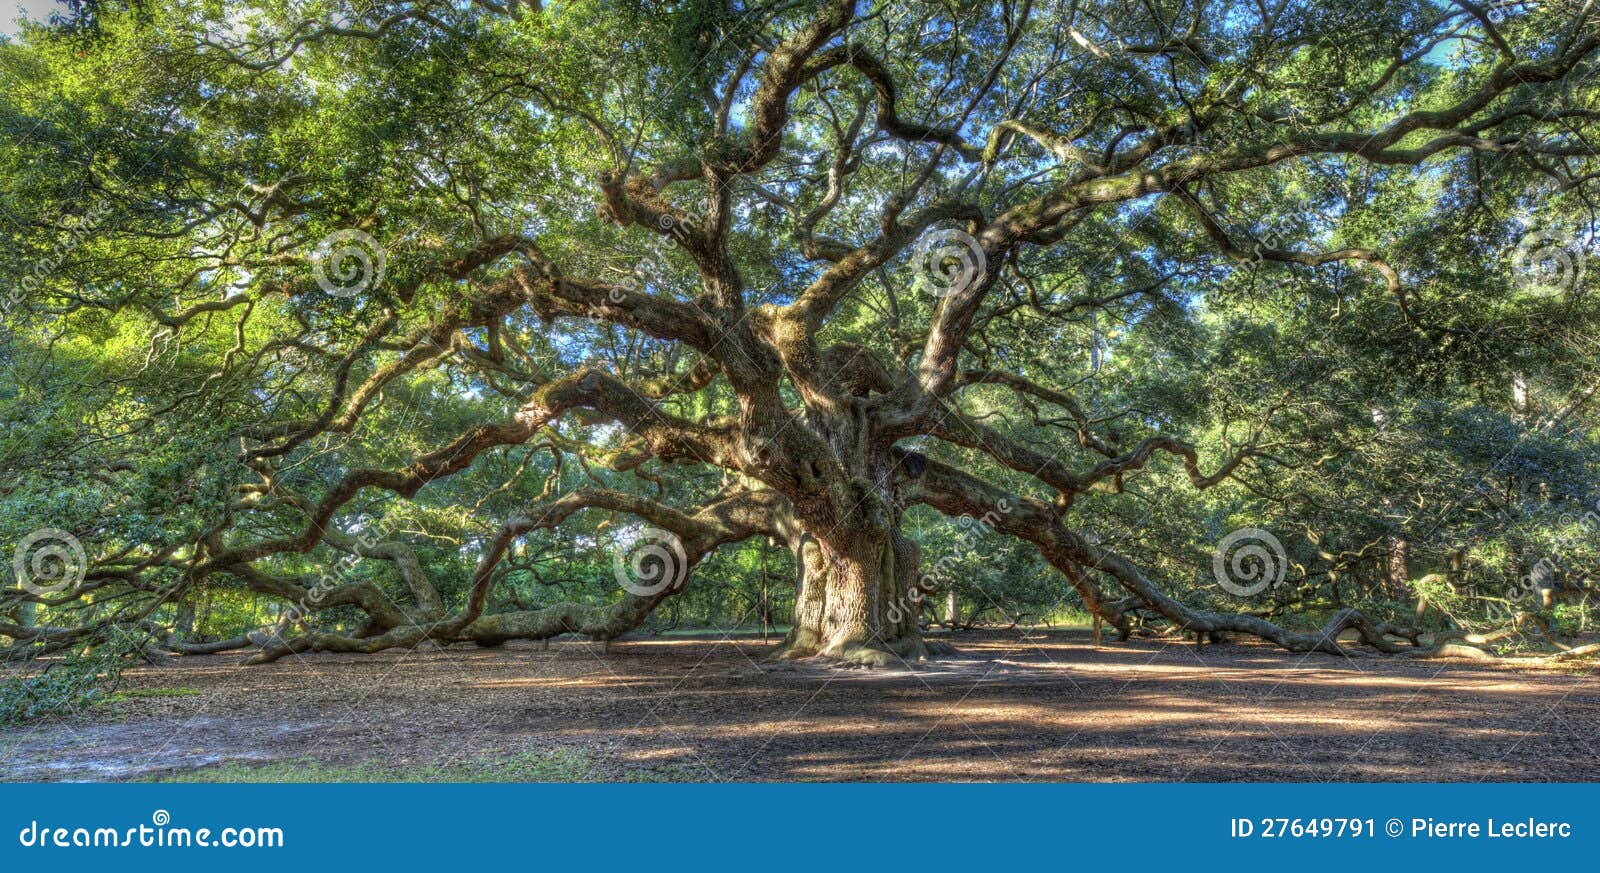 magical angel oak tree, charleston sc